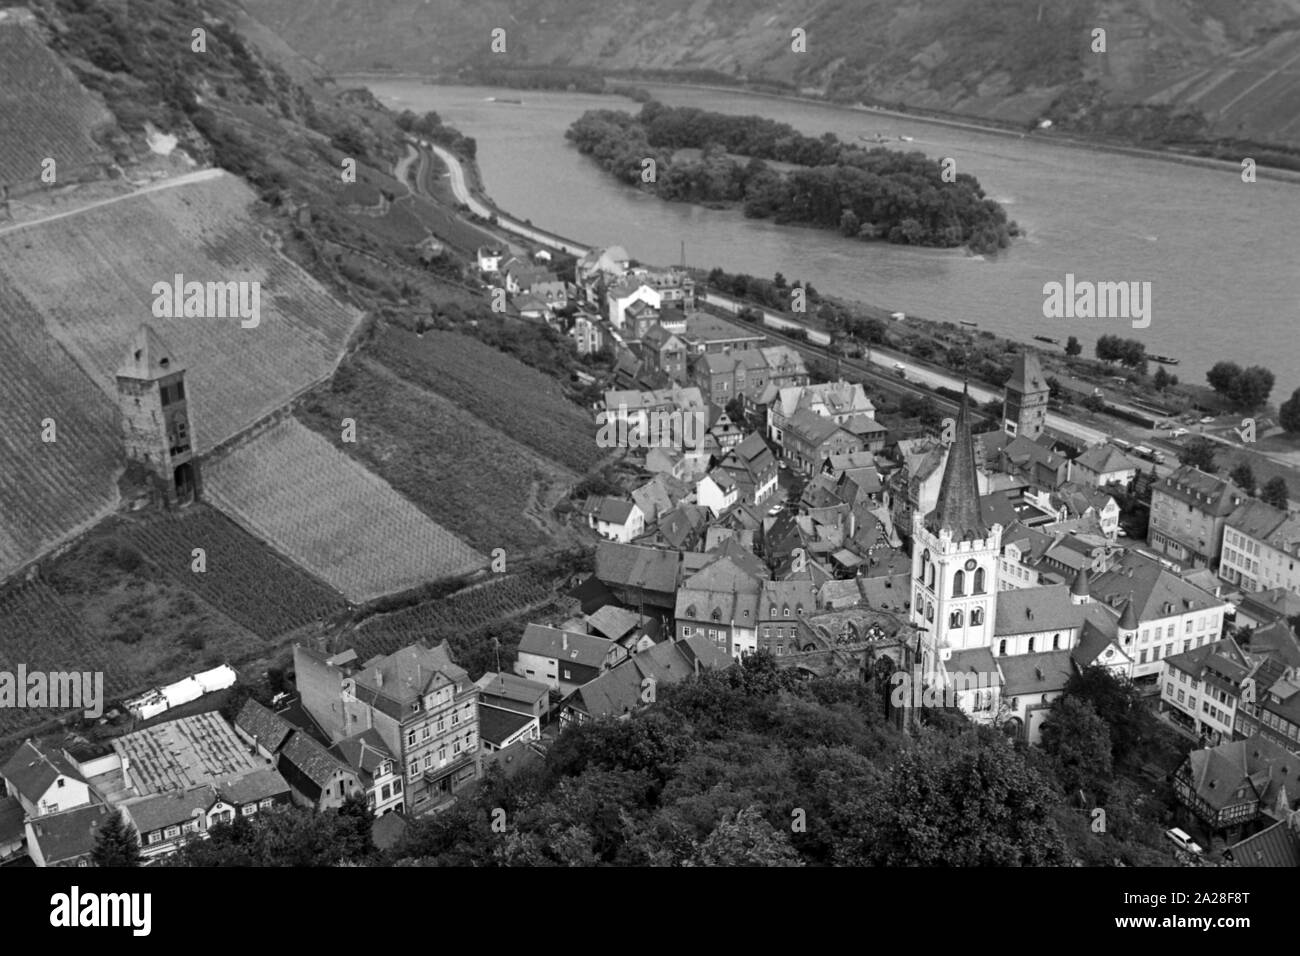 Blick auf die Stadt Bacharach mit der Bacharacher Werth Insel im Rhein, Deutschland 1968. View to the city of Bacharach with the Rhine island Bacharacher Werth, Germany 1968. Stock Photo